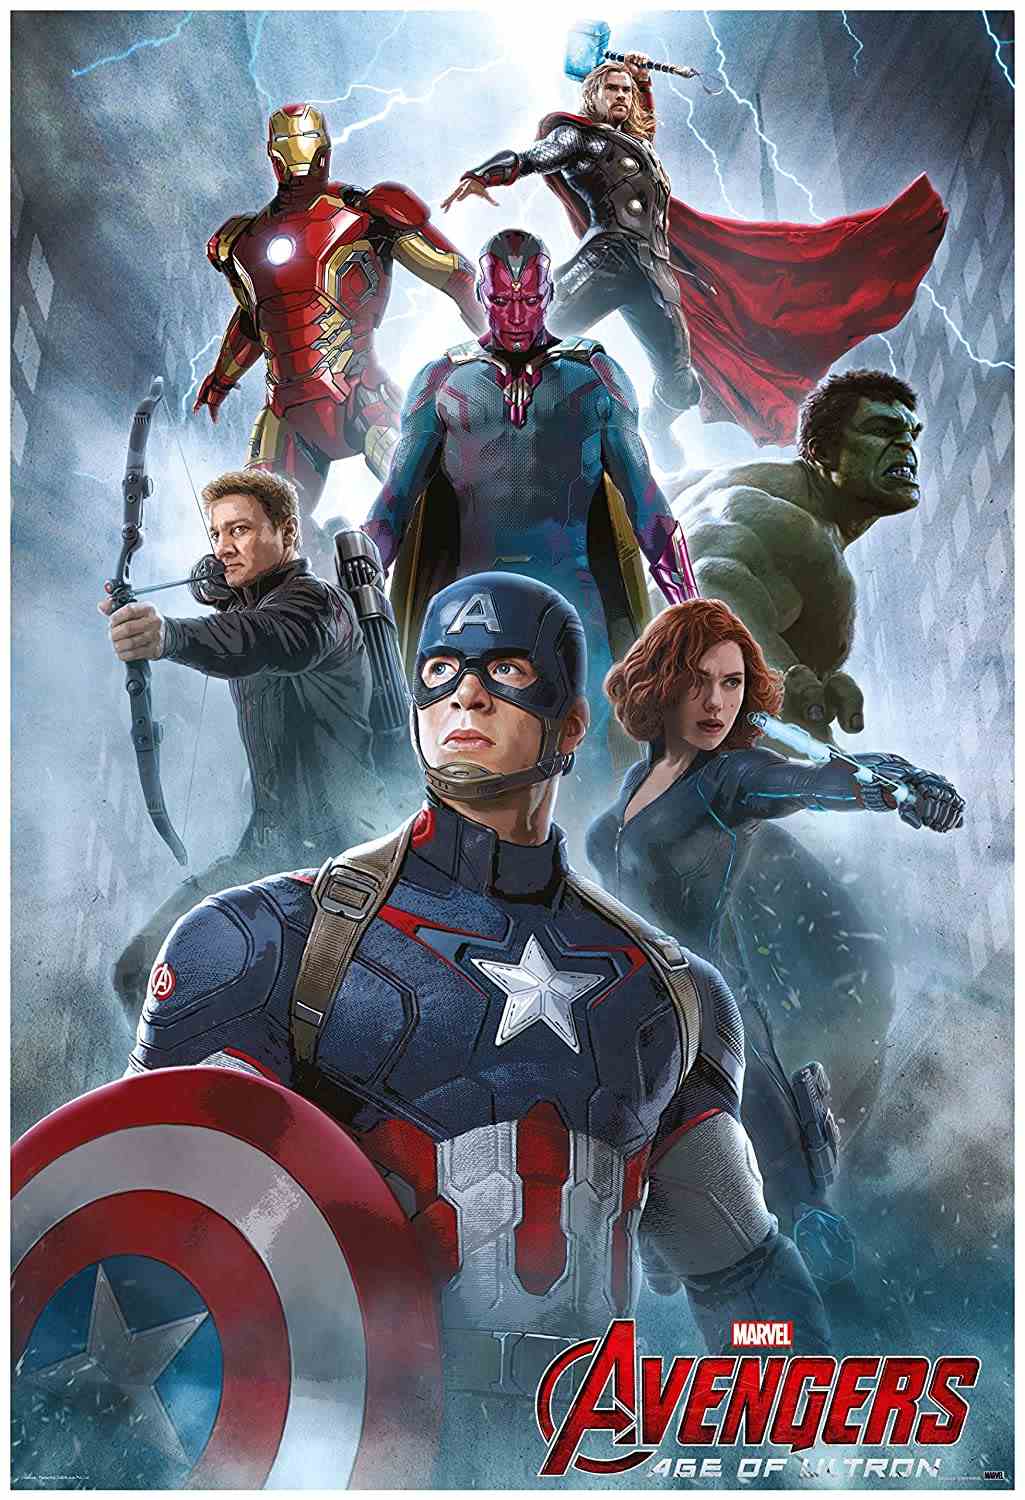 Avengers-Age-of-Ultron-2015-MCU-Hindi-English-BluRay-Dual-Audio-Full-Movie-HD-ESub